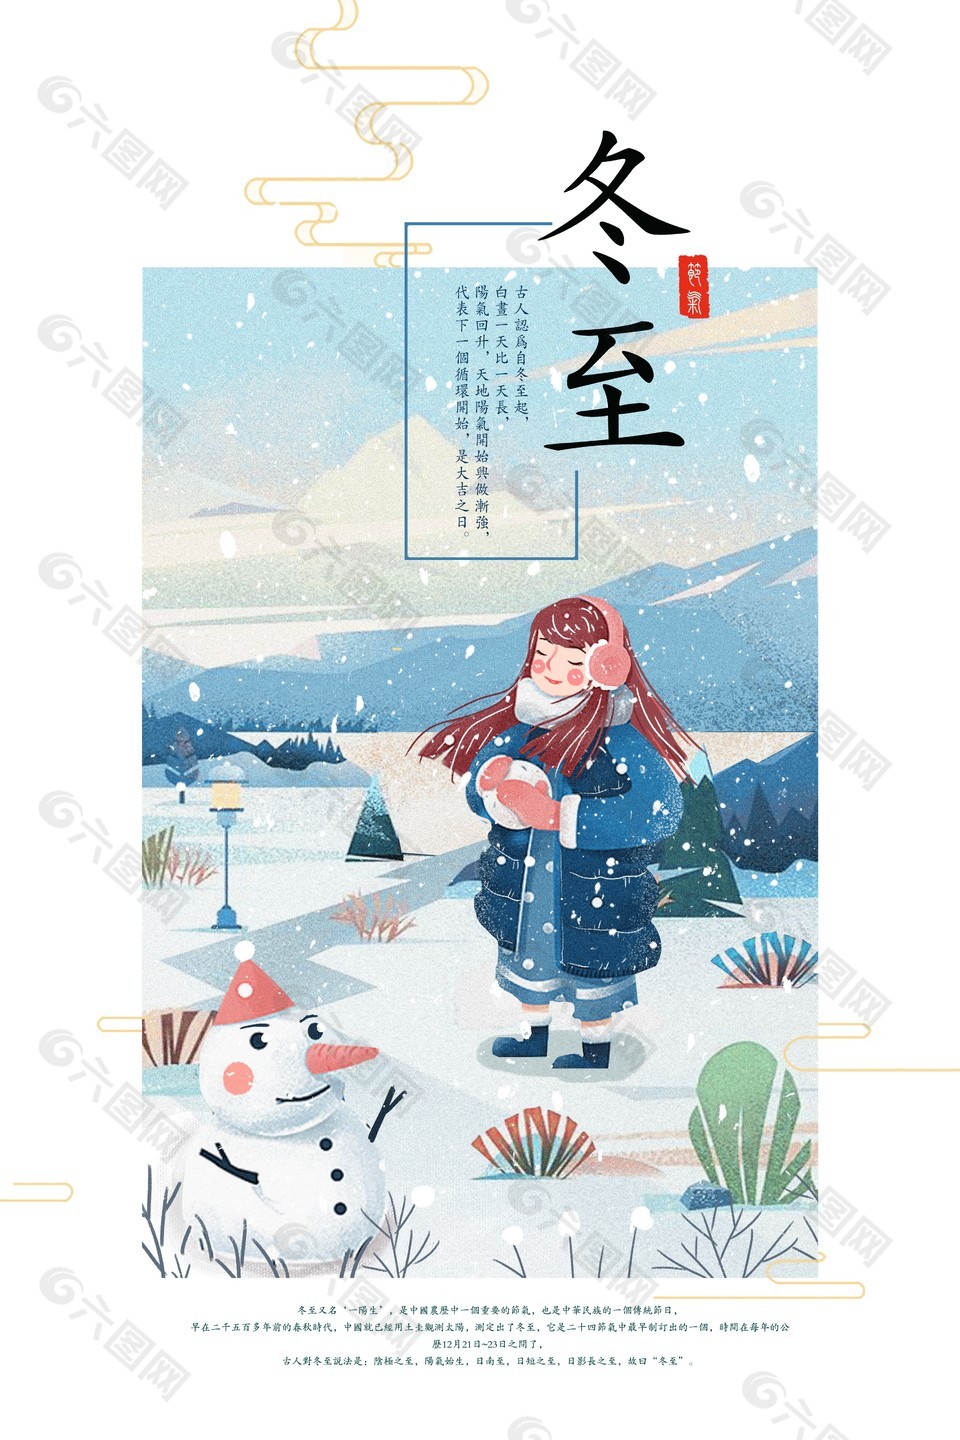 冬日卡通插画背景冬至节气海报下载